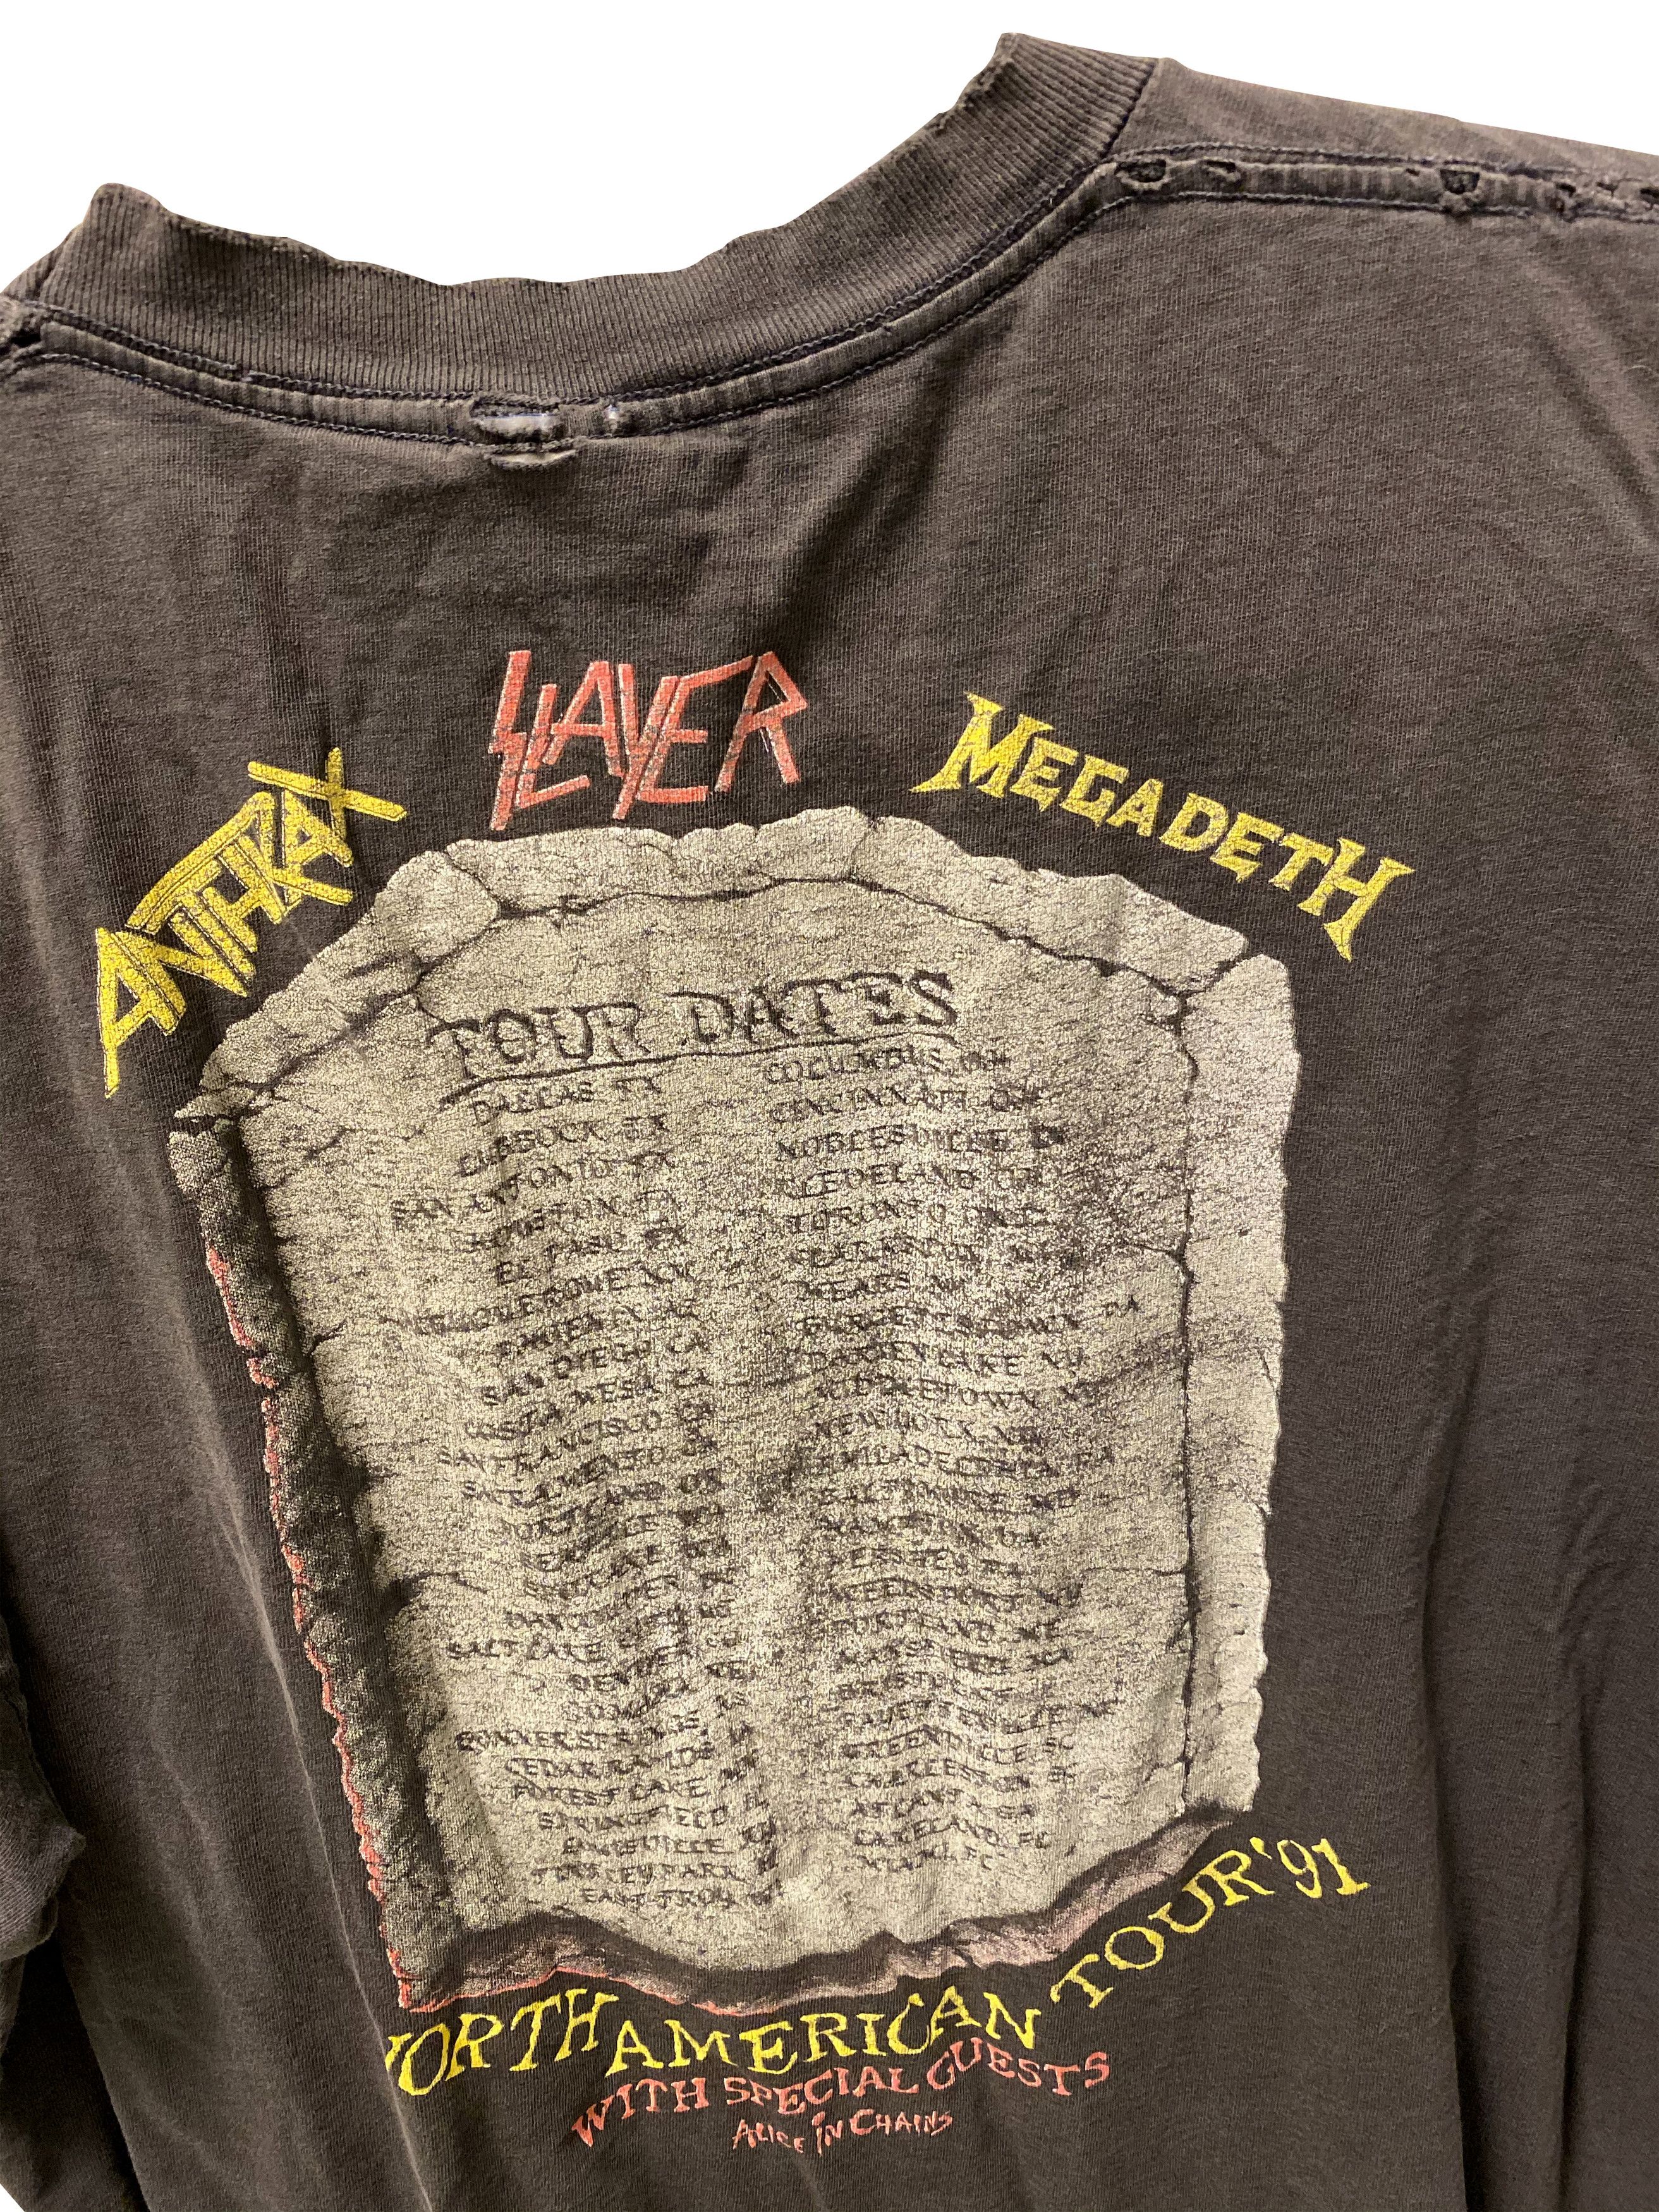 Brockum Slayer Anthrax Megadeath Clash of Titans Tour 1991 XL Size US XL / EU 56 / 4 - 5 Preview